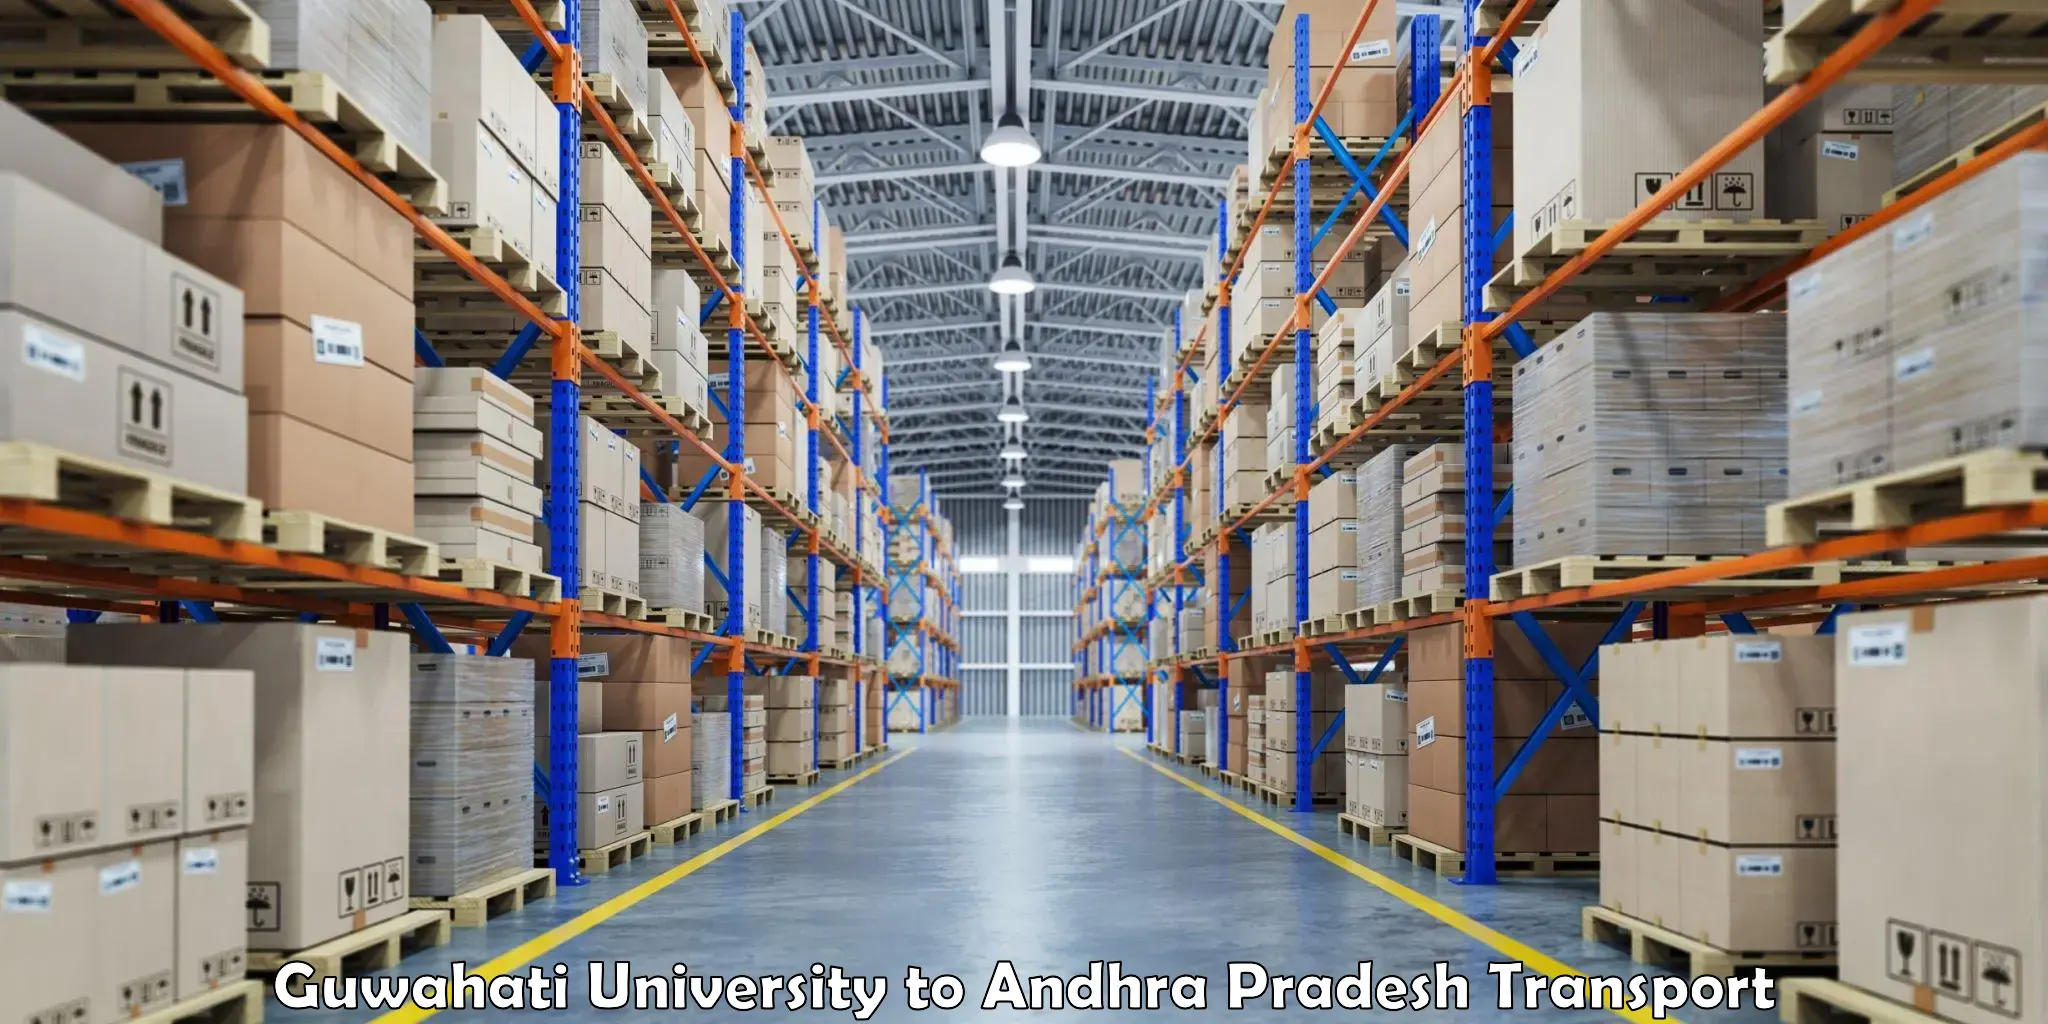 Furniture transport service Guwahati University to Andhra Pradesh